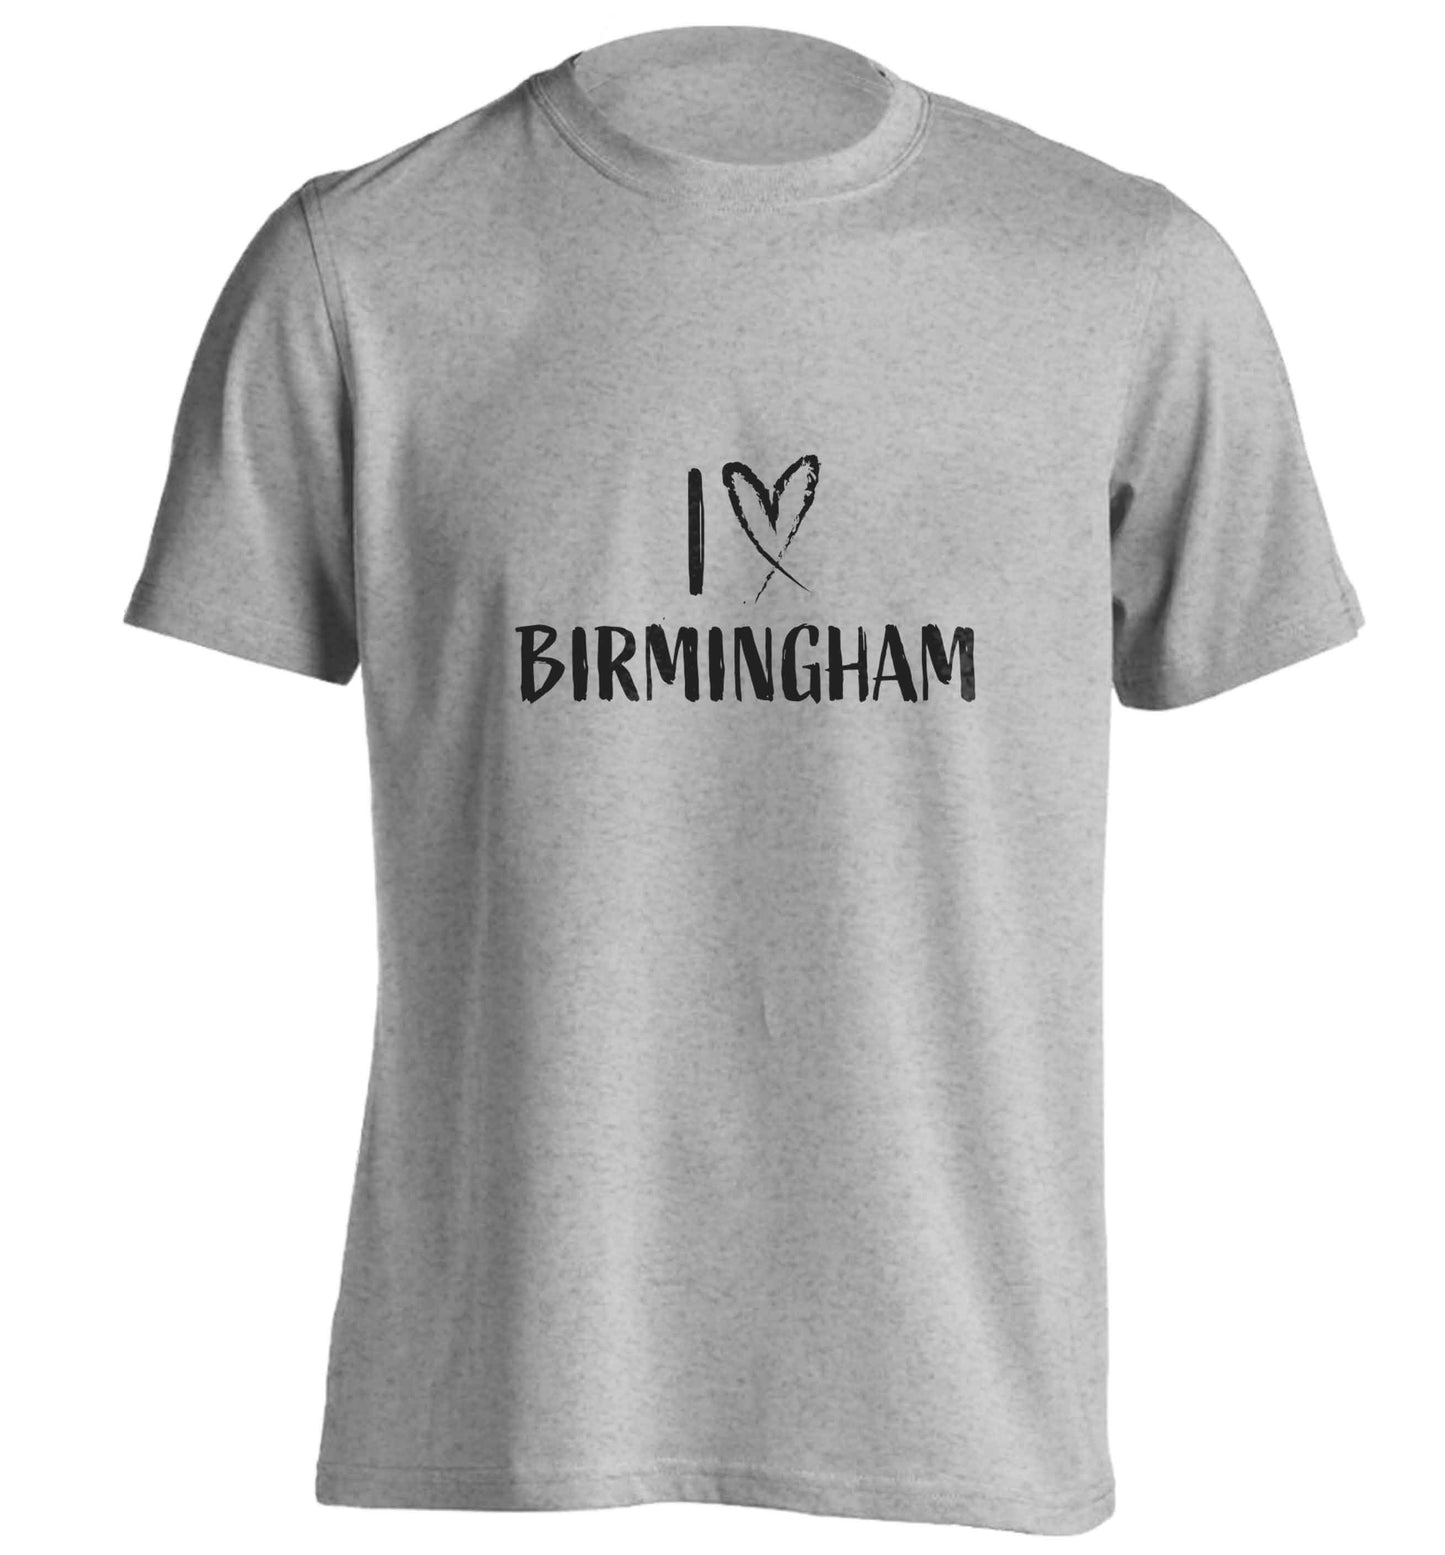 I love Birmingham adults unisex grey Tshirt 2XL